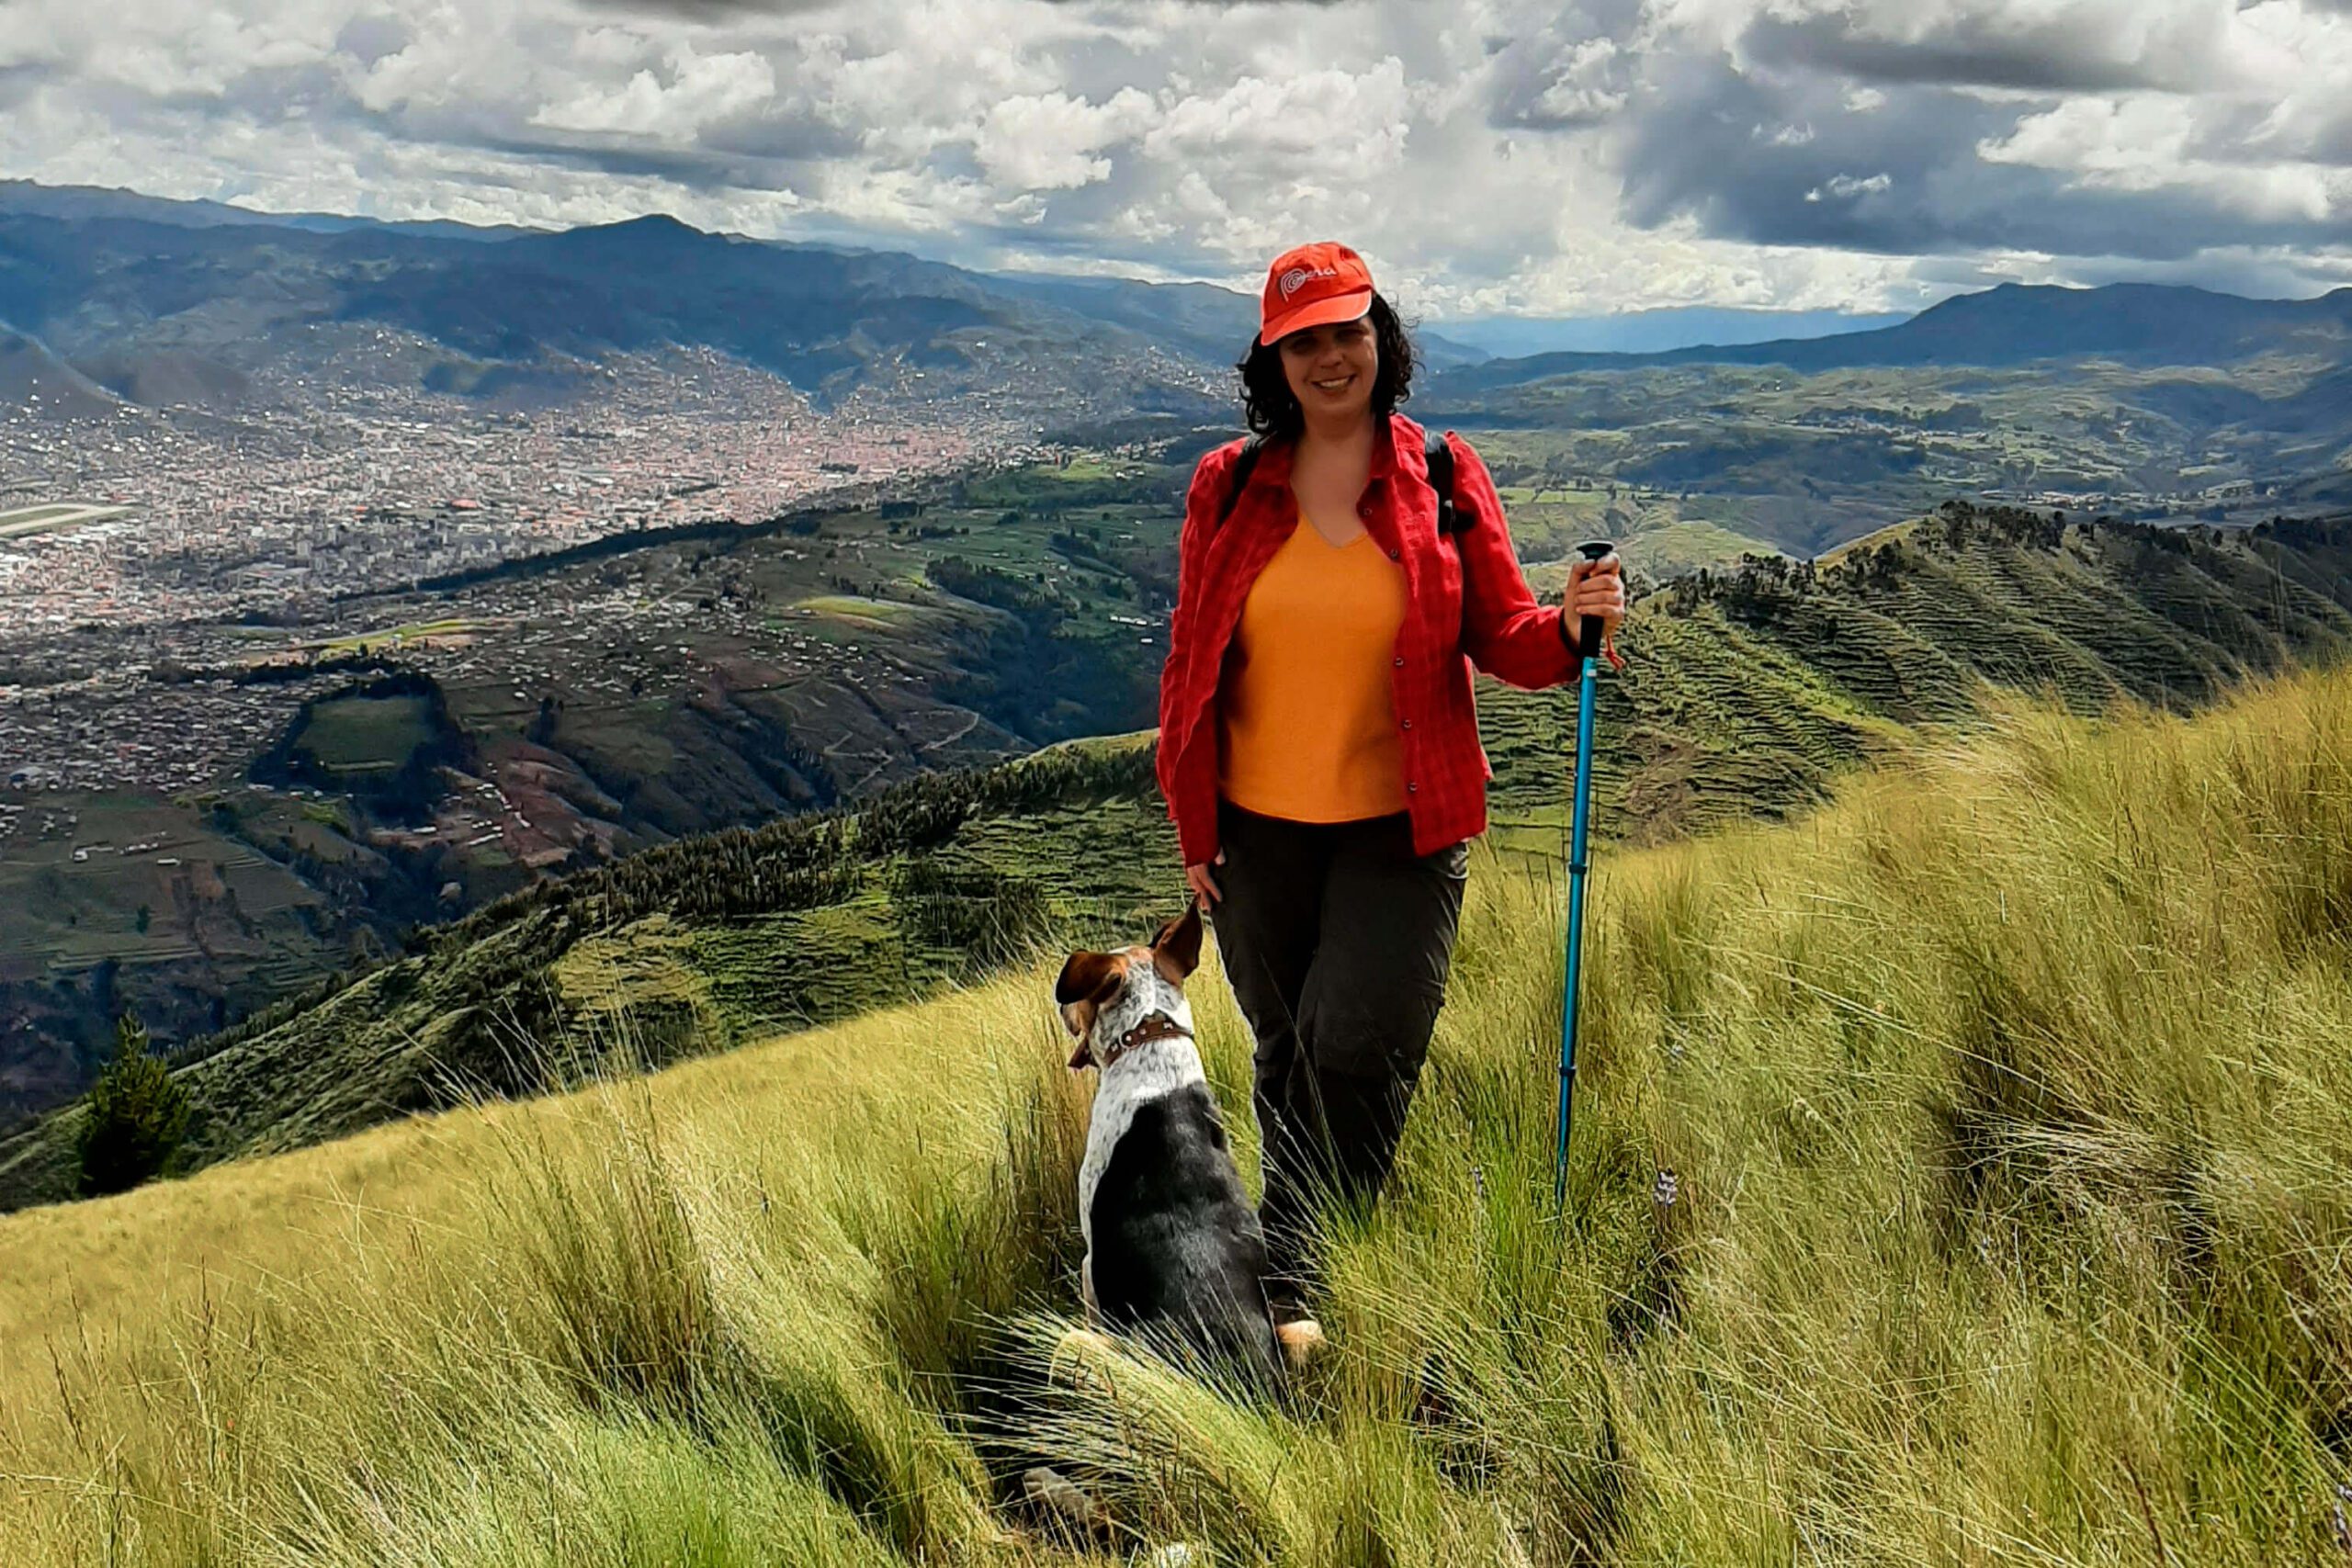 Indie and pet dog at Montaña El Picol, San Jerónimo, Cusco